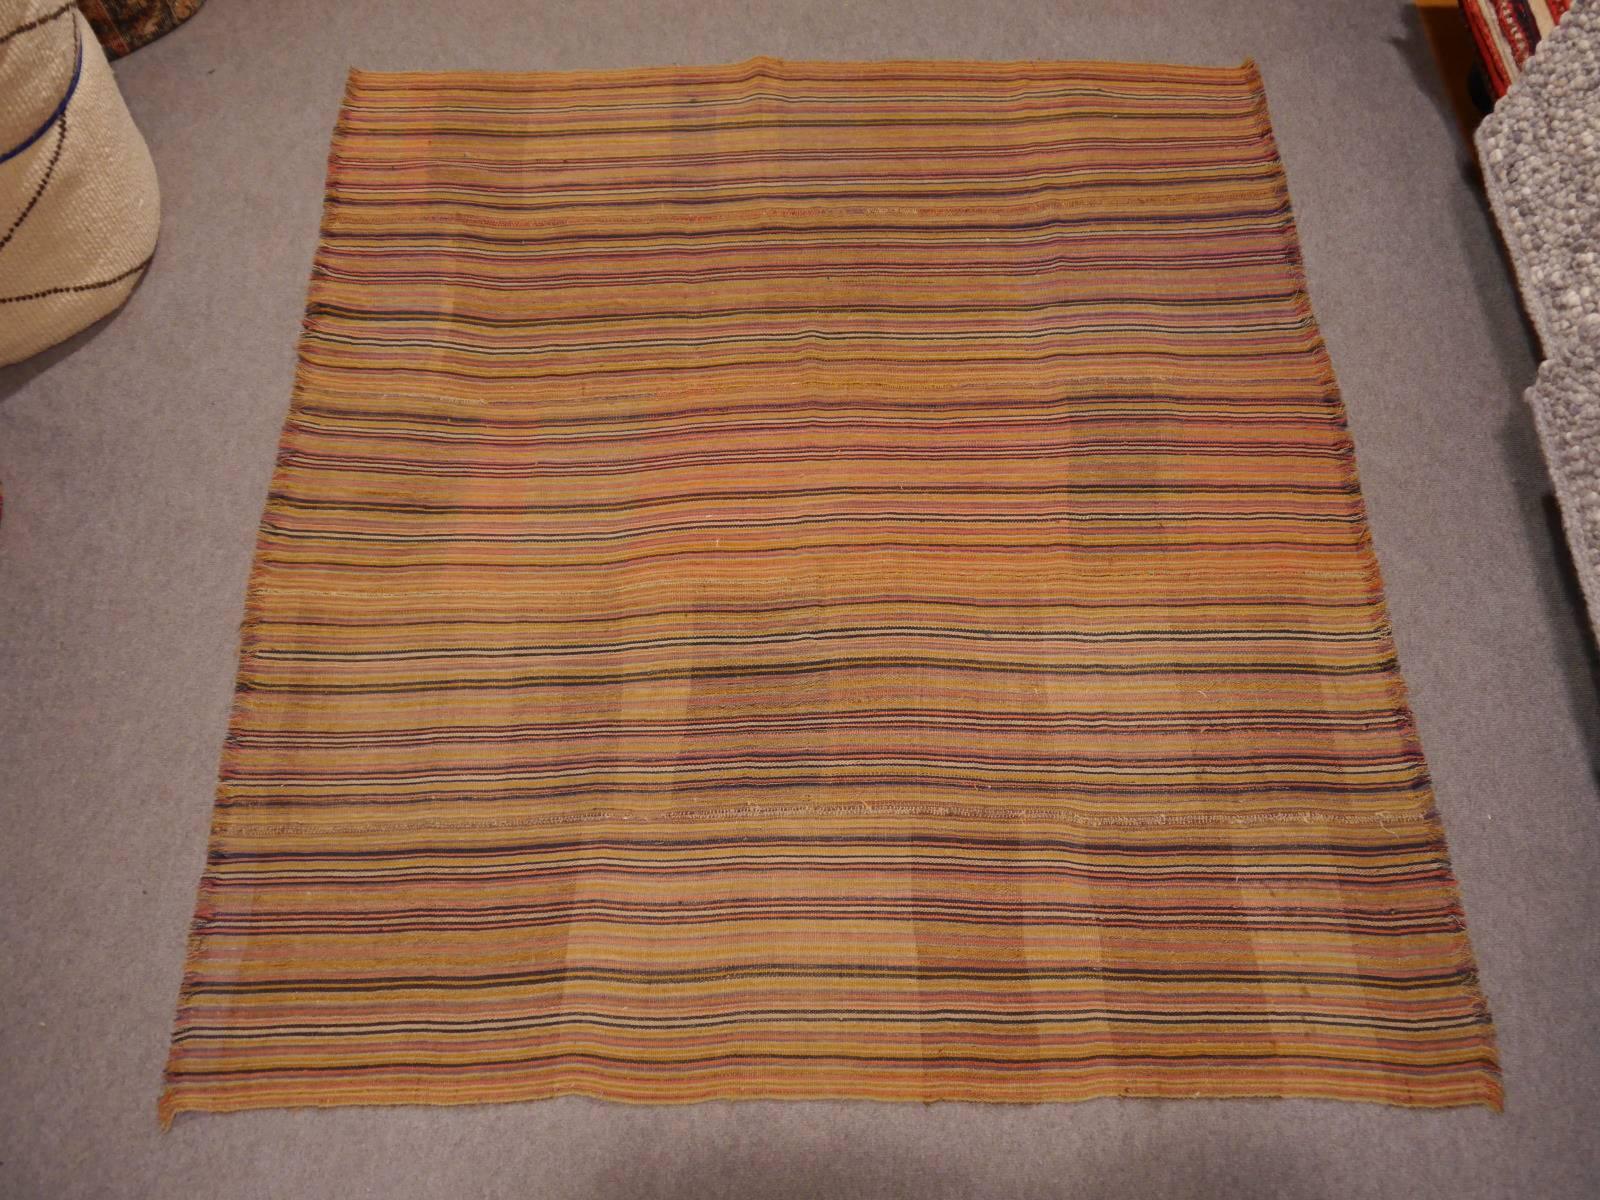 Azerbaijani Antique Jajim Striped Banded Kilim Rug Blanket For Sale